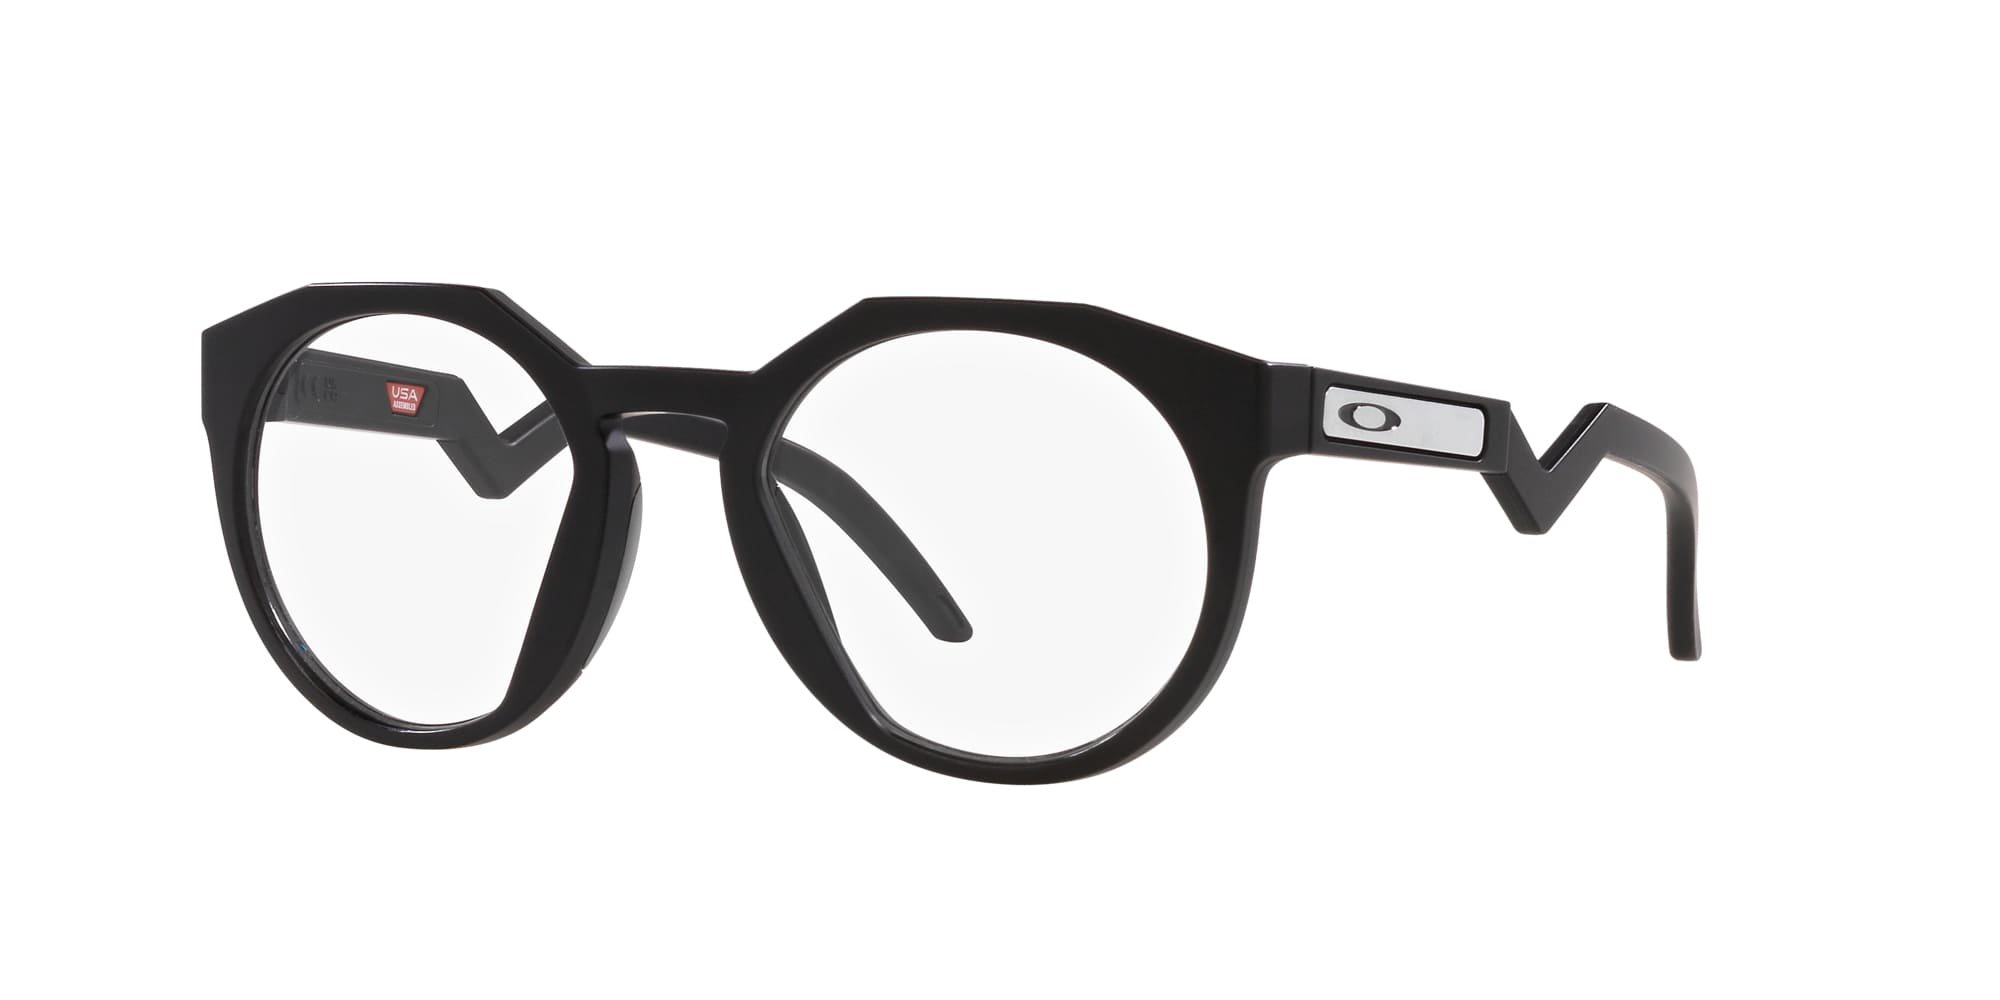 Das Bild zeigt die Korrektionsbrille OX8139 813901  von der Marke Oakley  in matt schwarz.